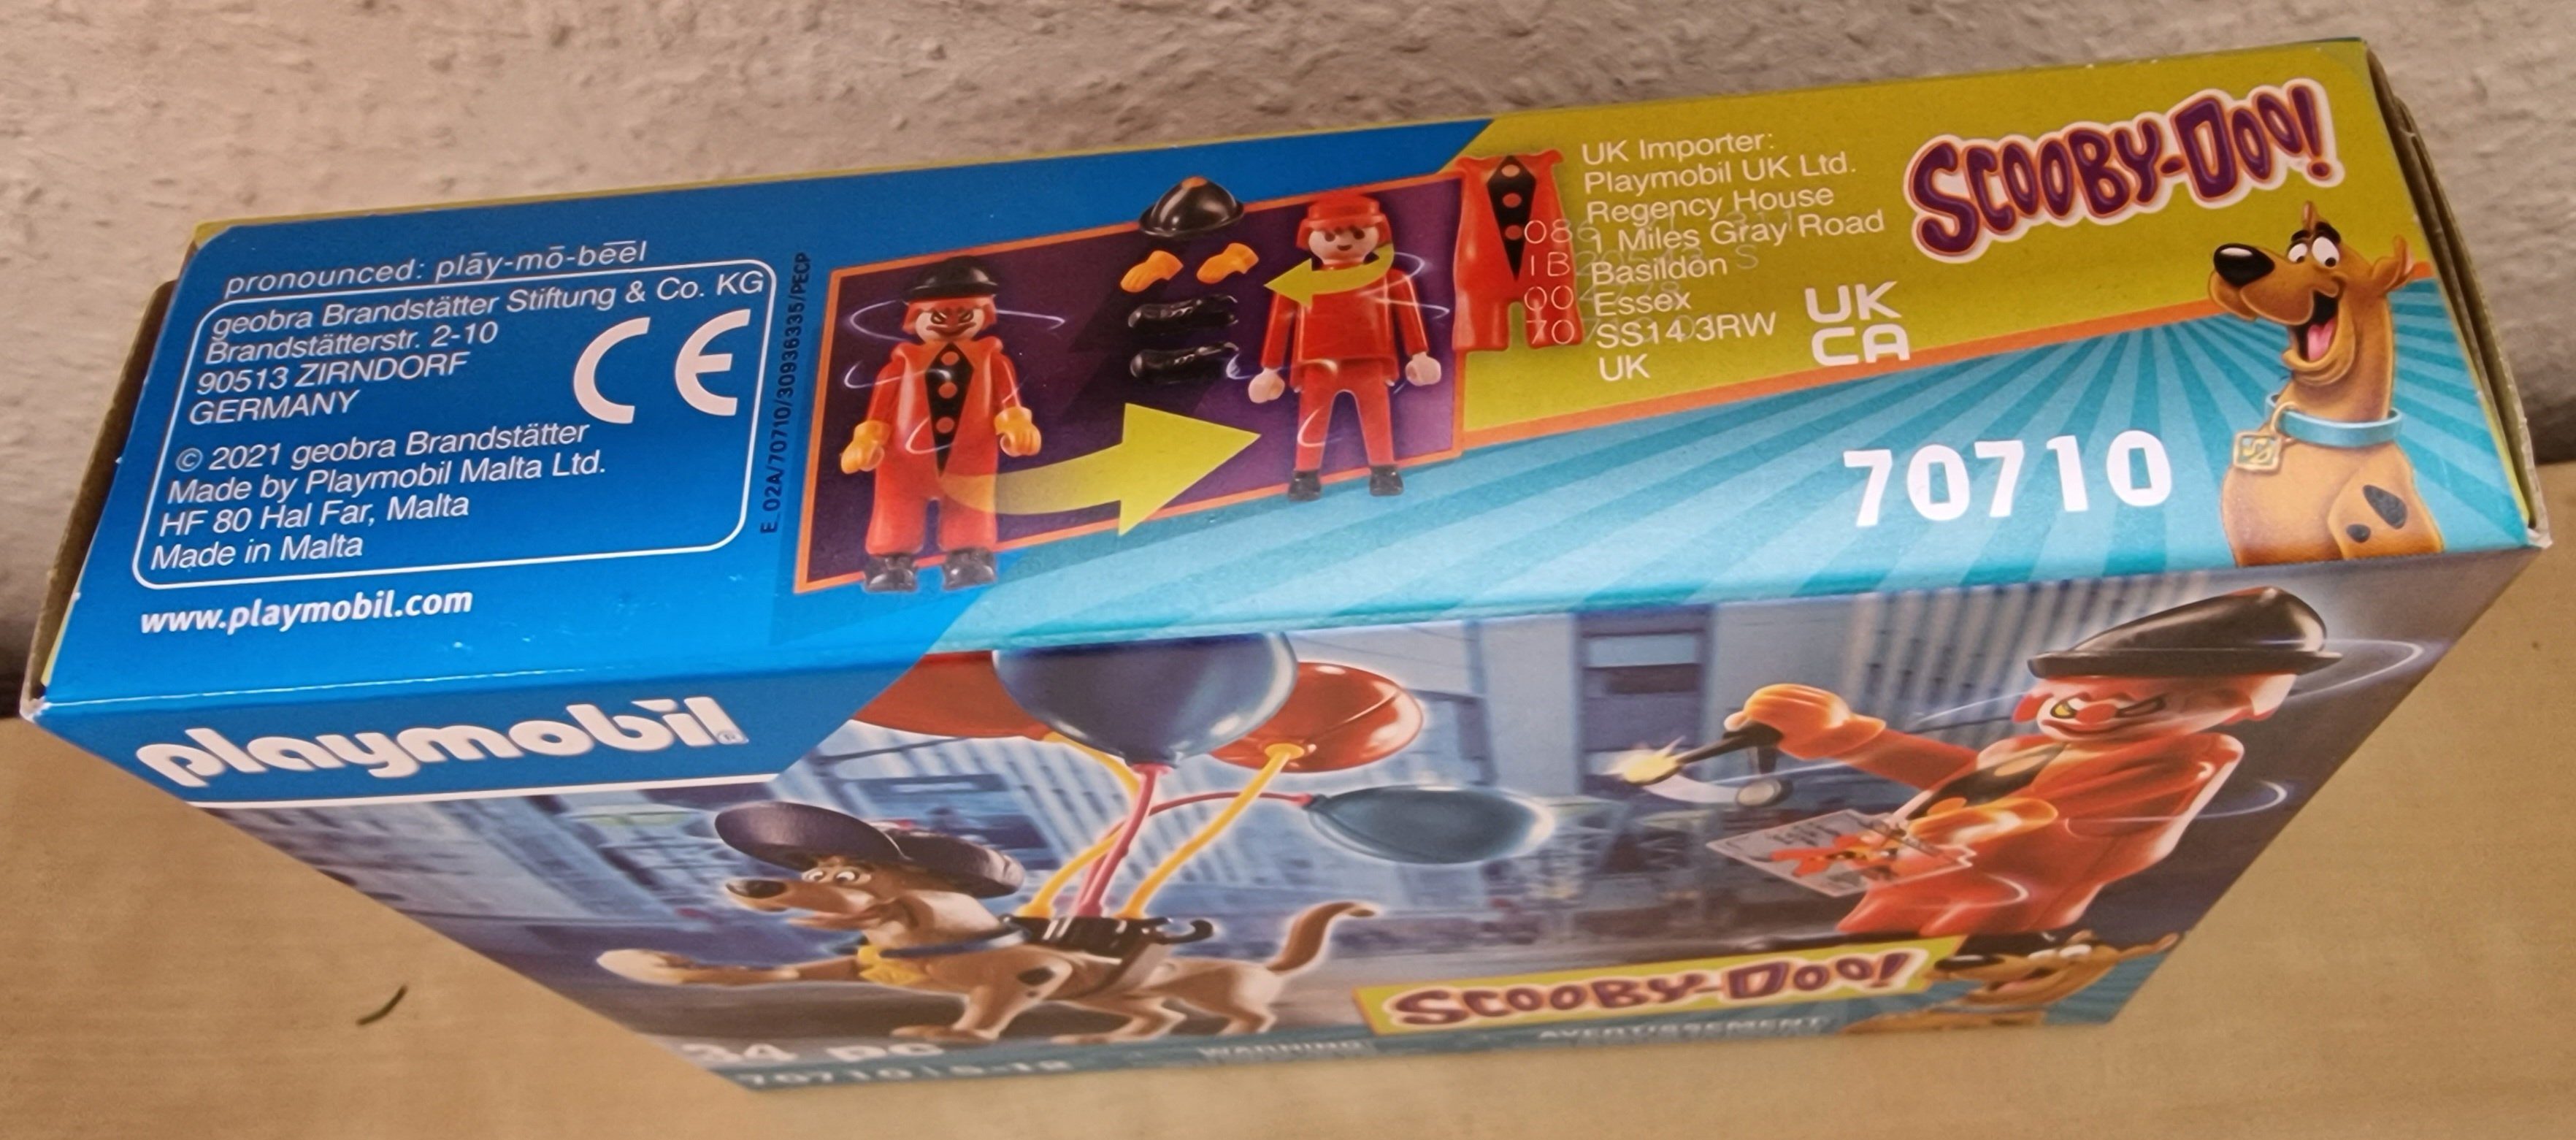 Spielfigur Scooby-Doo, (34-tlg., OVP 70710), Playmobil®